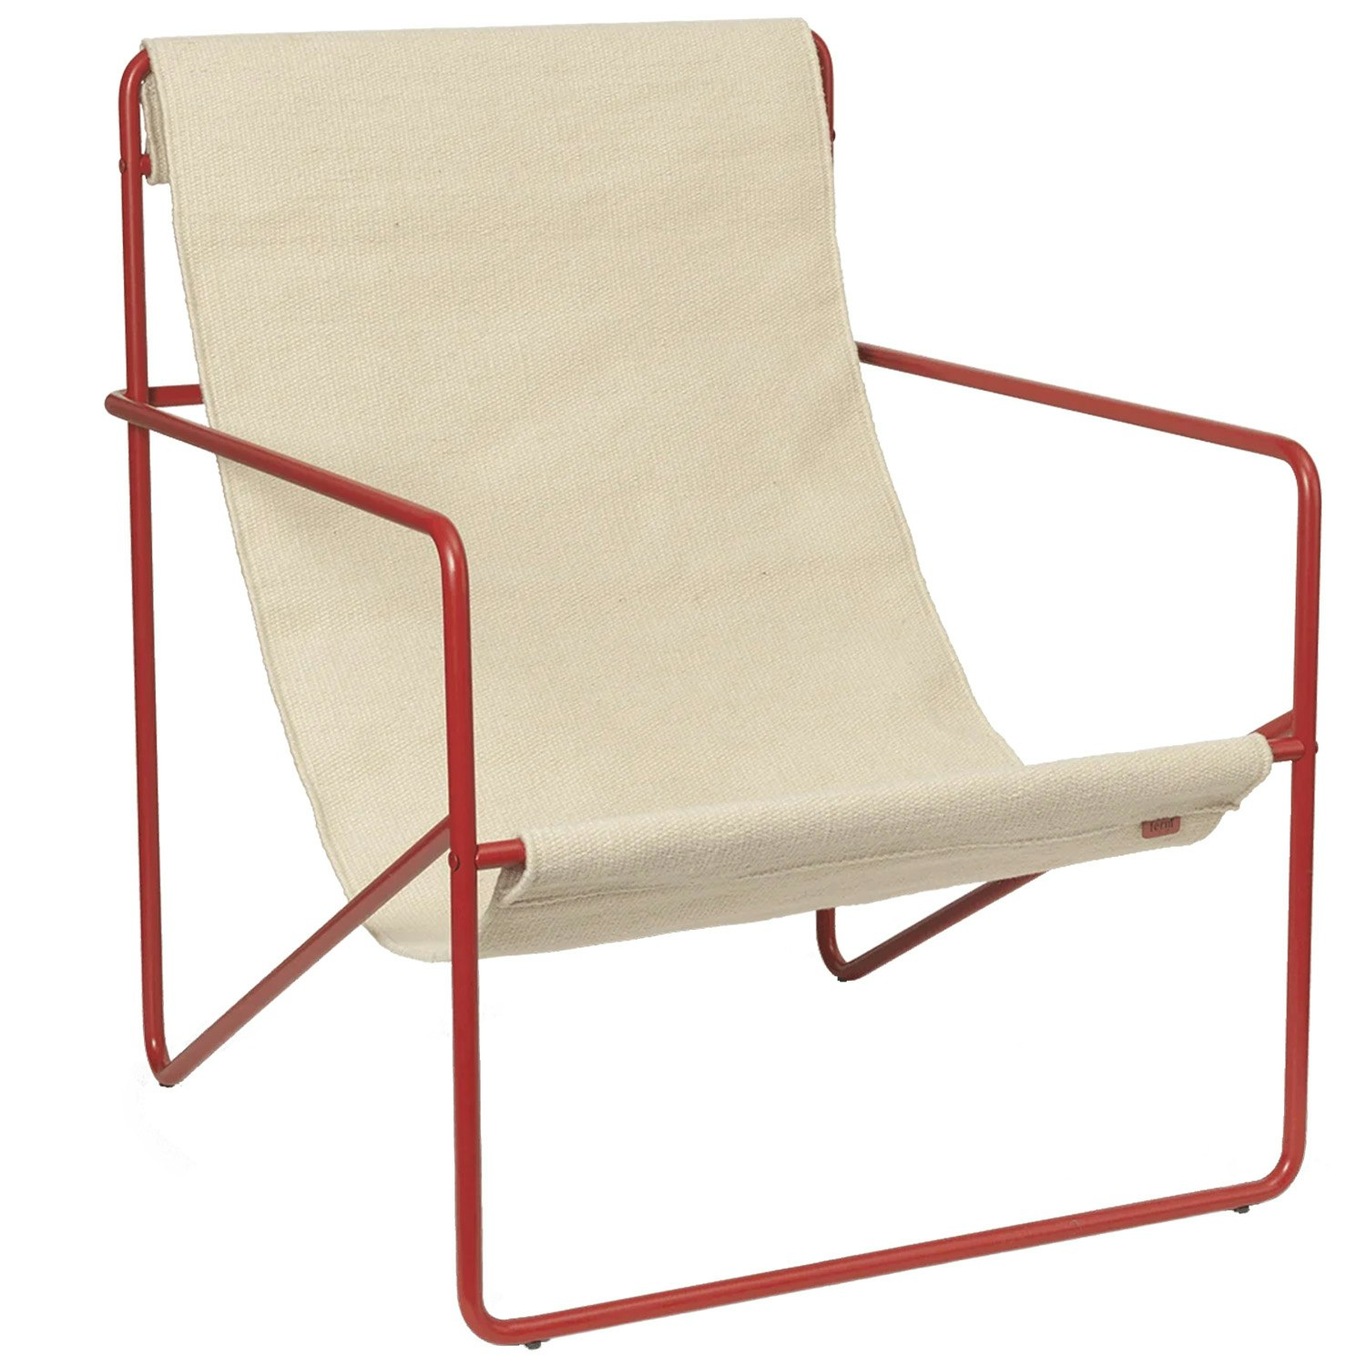 Desert Lounge Stuhl, Poppy Red / Cloud